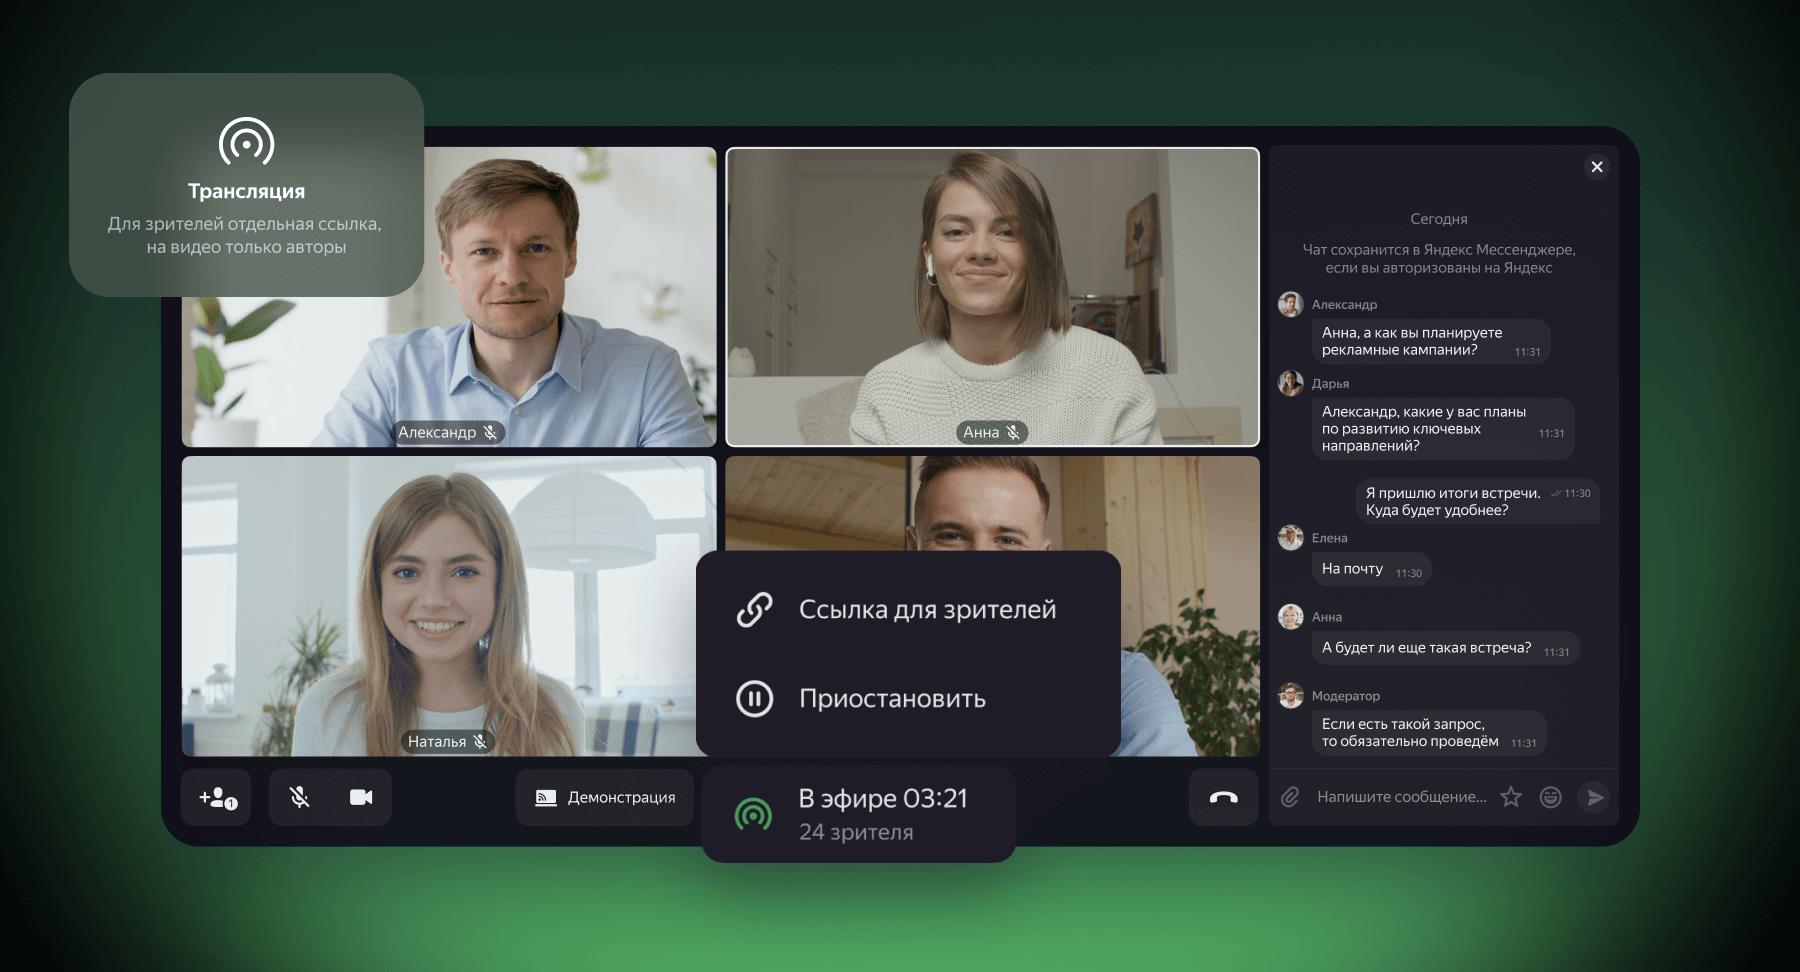 Яндекс 360 для бизнеса запустил видеотрансляции